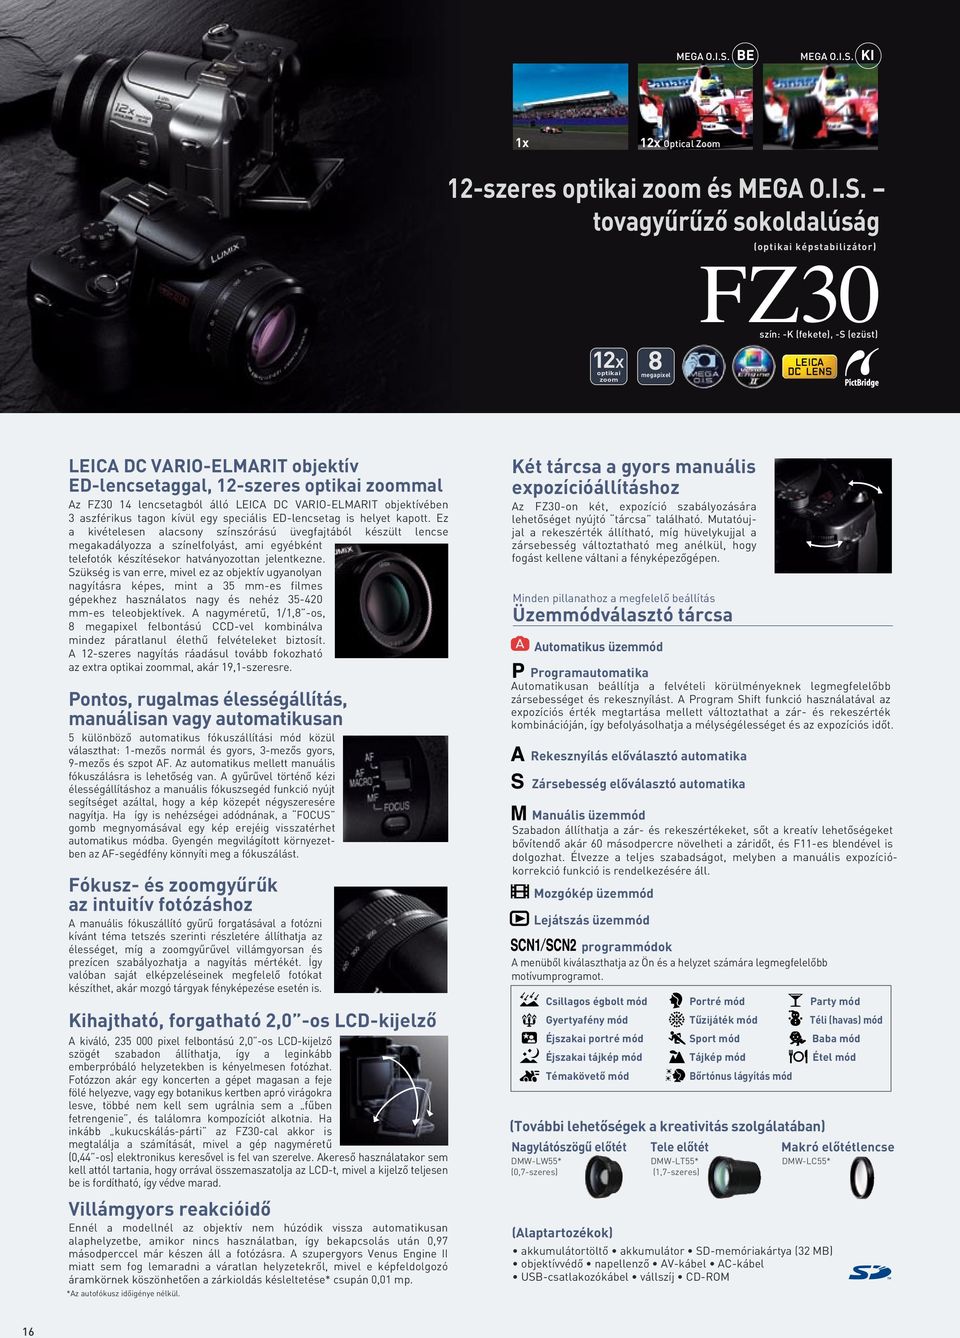 EDlencsetaggal, 12szeres optikai zoommal Az FZ30 14 lencsetagból álló LEICA DC VARIOELMARIT objektívében 3 aszférikus tagon kívül egy speciális EDlencsetag is helyet kapott.